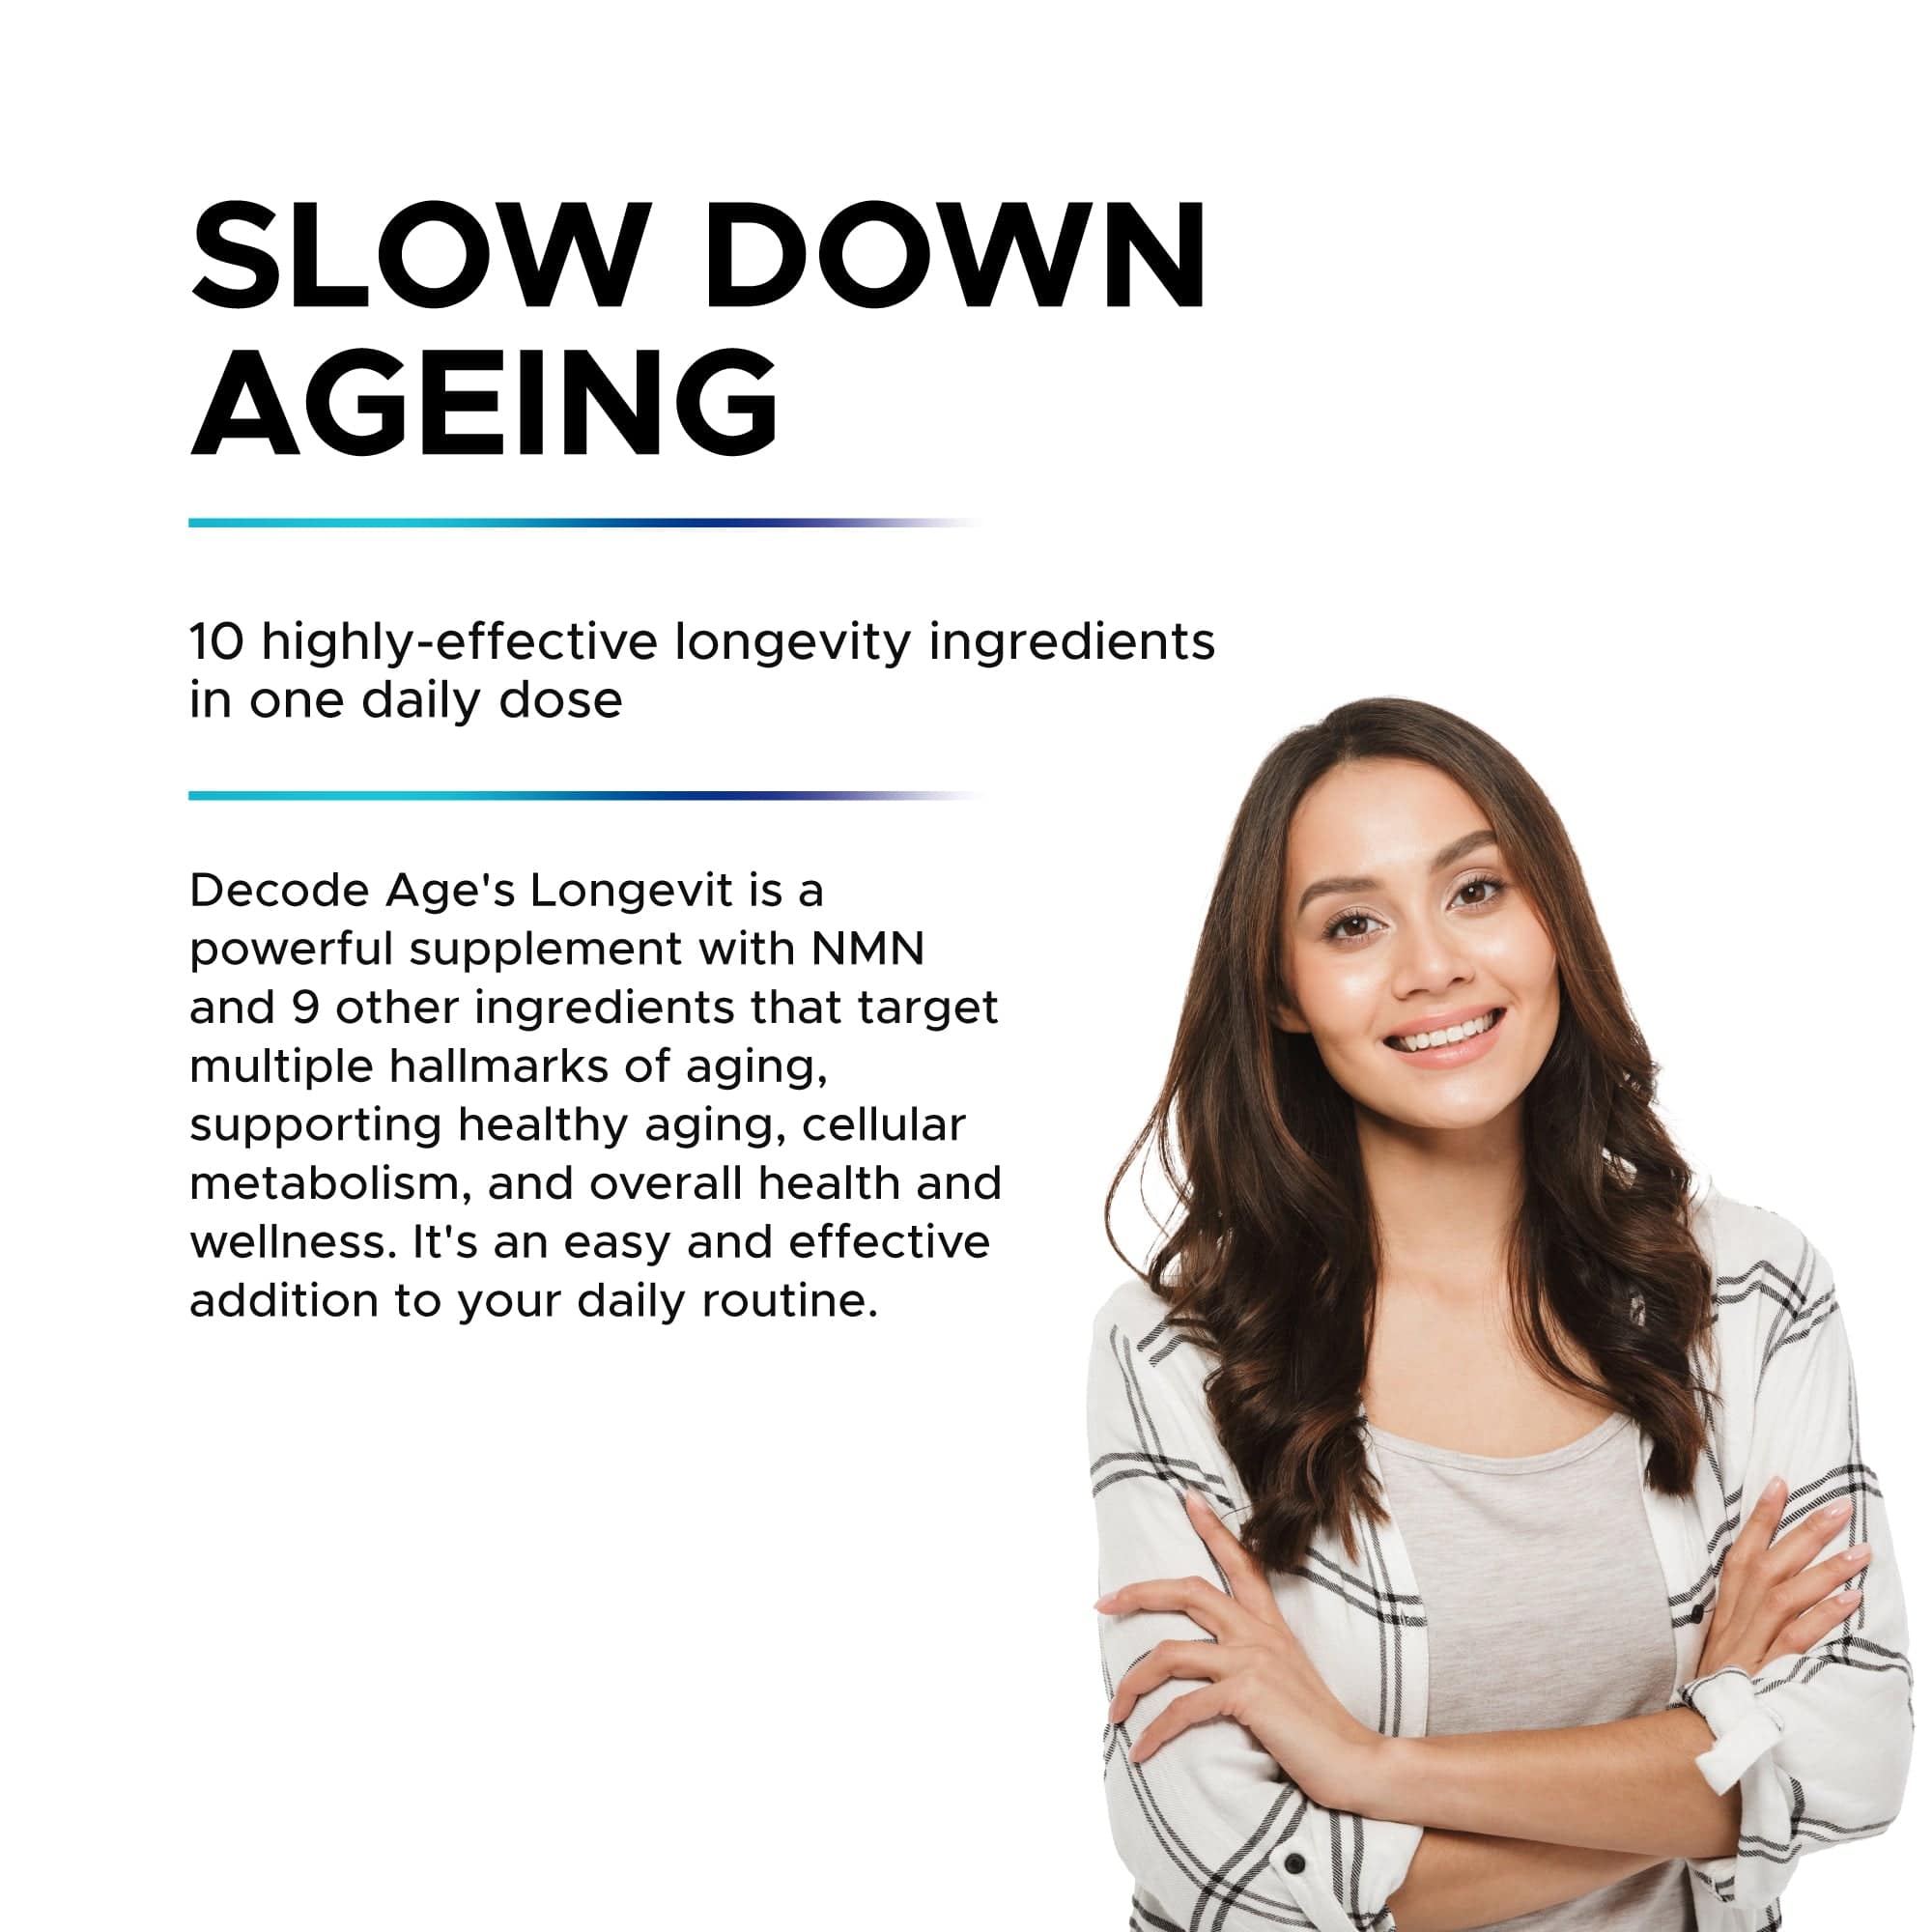 DecodeAge Capsule LongeVit NMN Supplement Blend | Slow Down Ageing Process